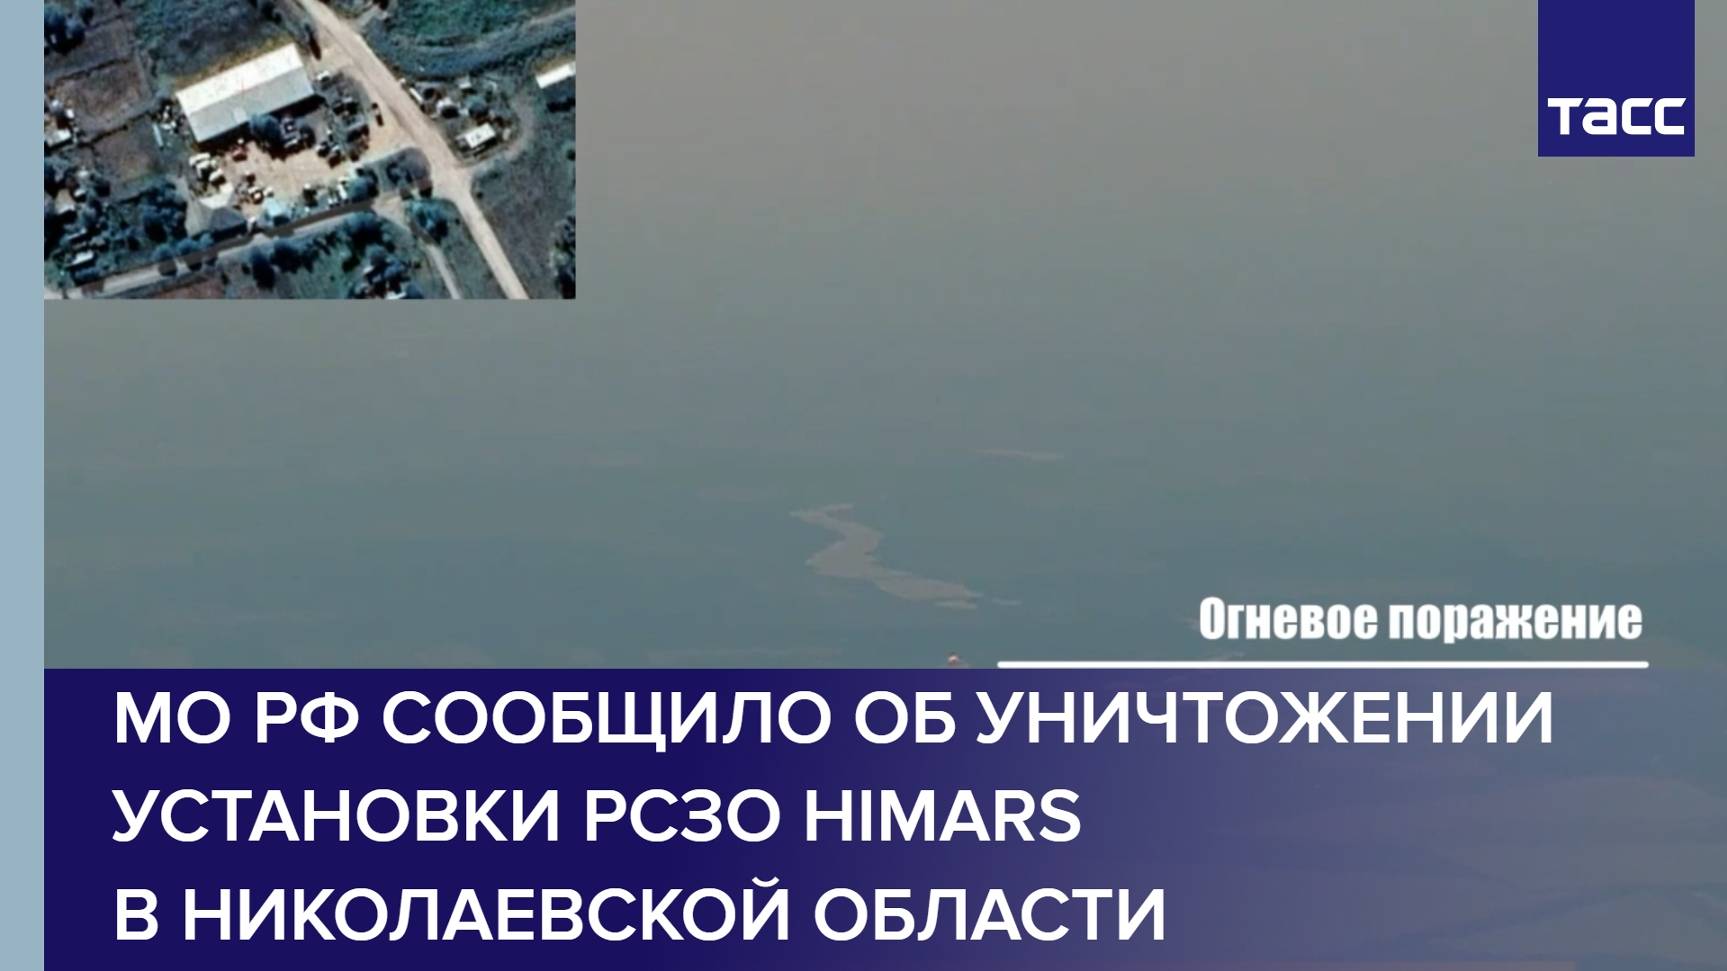 МО РФ сообщило об уничтожении установки РСЗО HIMARS в Николаевской области